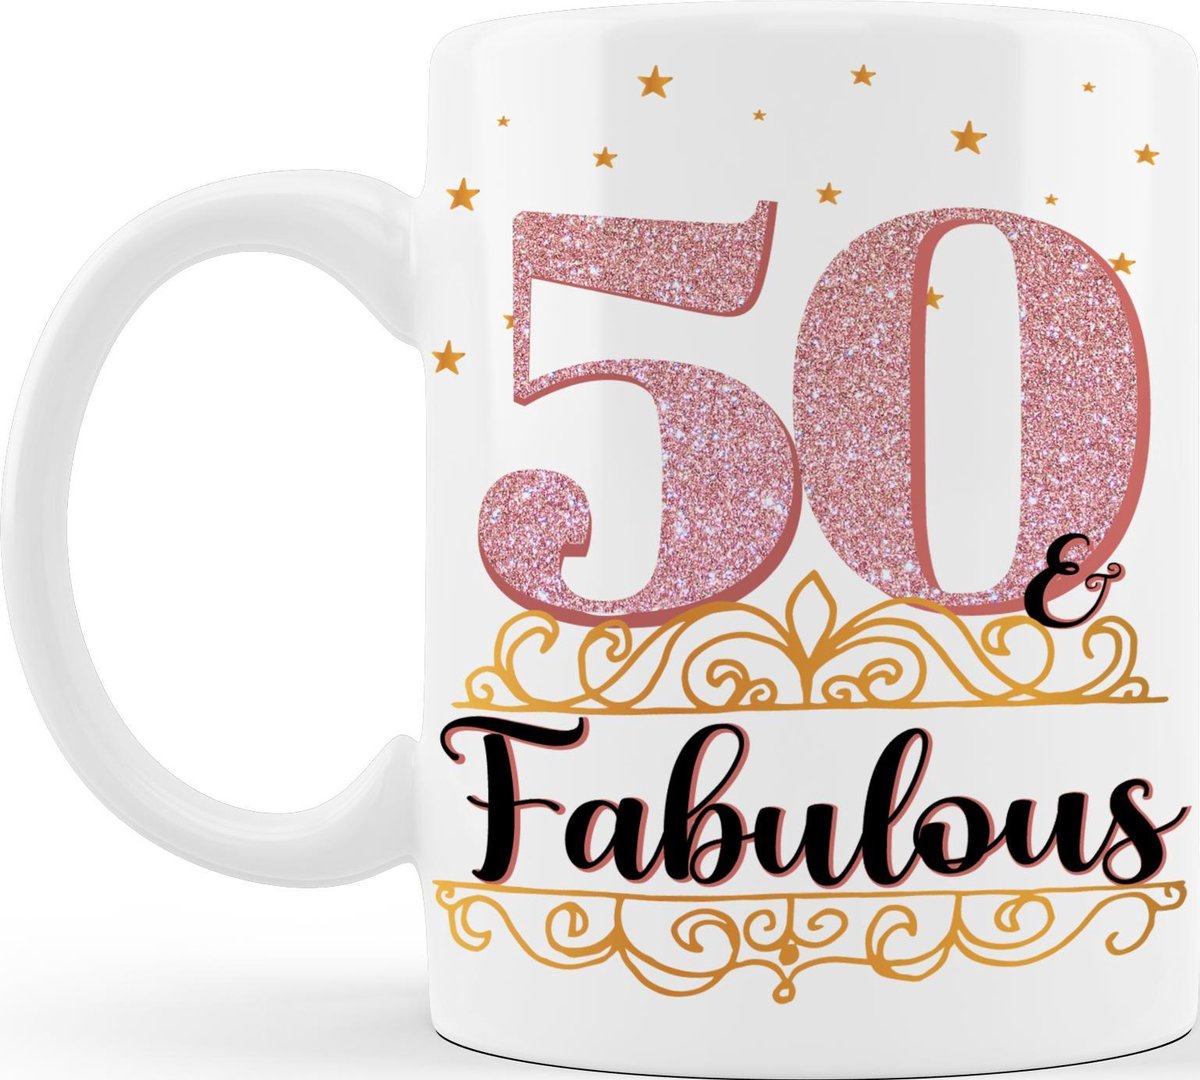 50 and Fabulous - Verjaardagsmok - 50 jaar - Verjaardagscadeau - Gratis cadeau inpak service